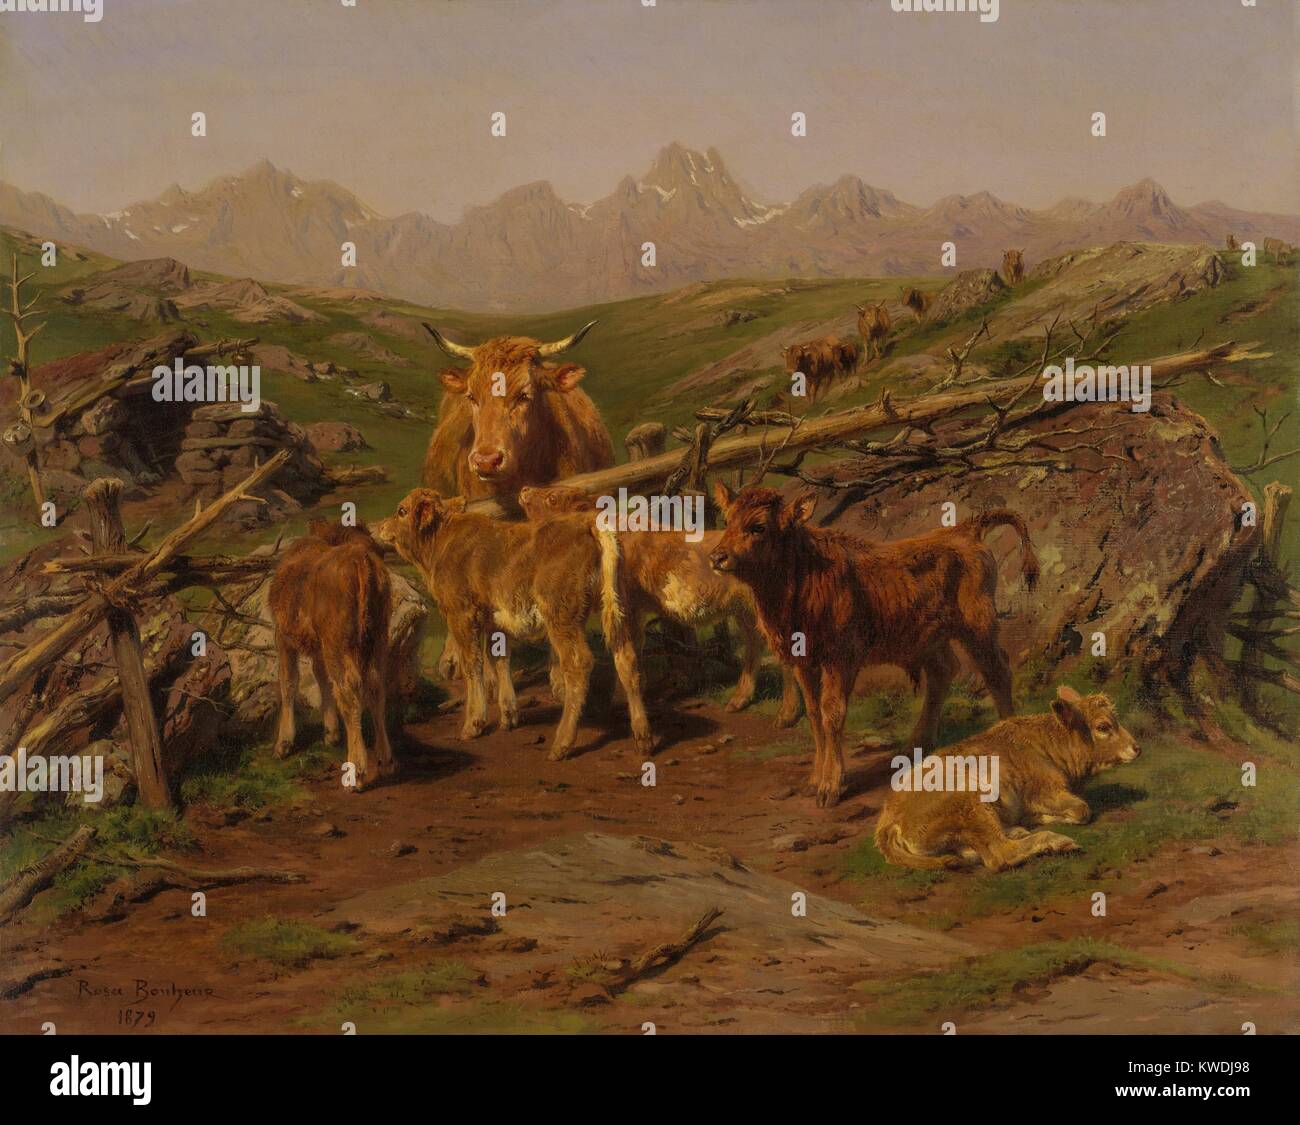 Absetzen der Kälber, von Rosa Bonheur, 1879, Französische Malerei, Öl auf Leinwand. In den Pyrenäen, die Szene zeigt die sechs bis acht Monate alten Kälber, die von der Herde getrennt und ihre Mütter, durch einen Zaun (BSLOC 2017 9 85) Stockfoto